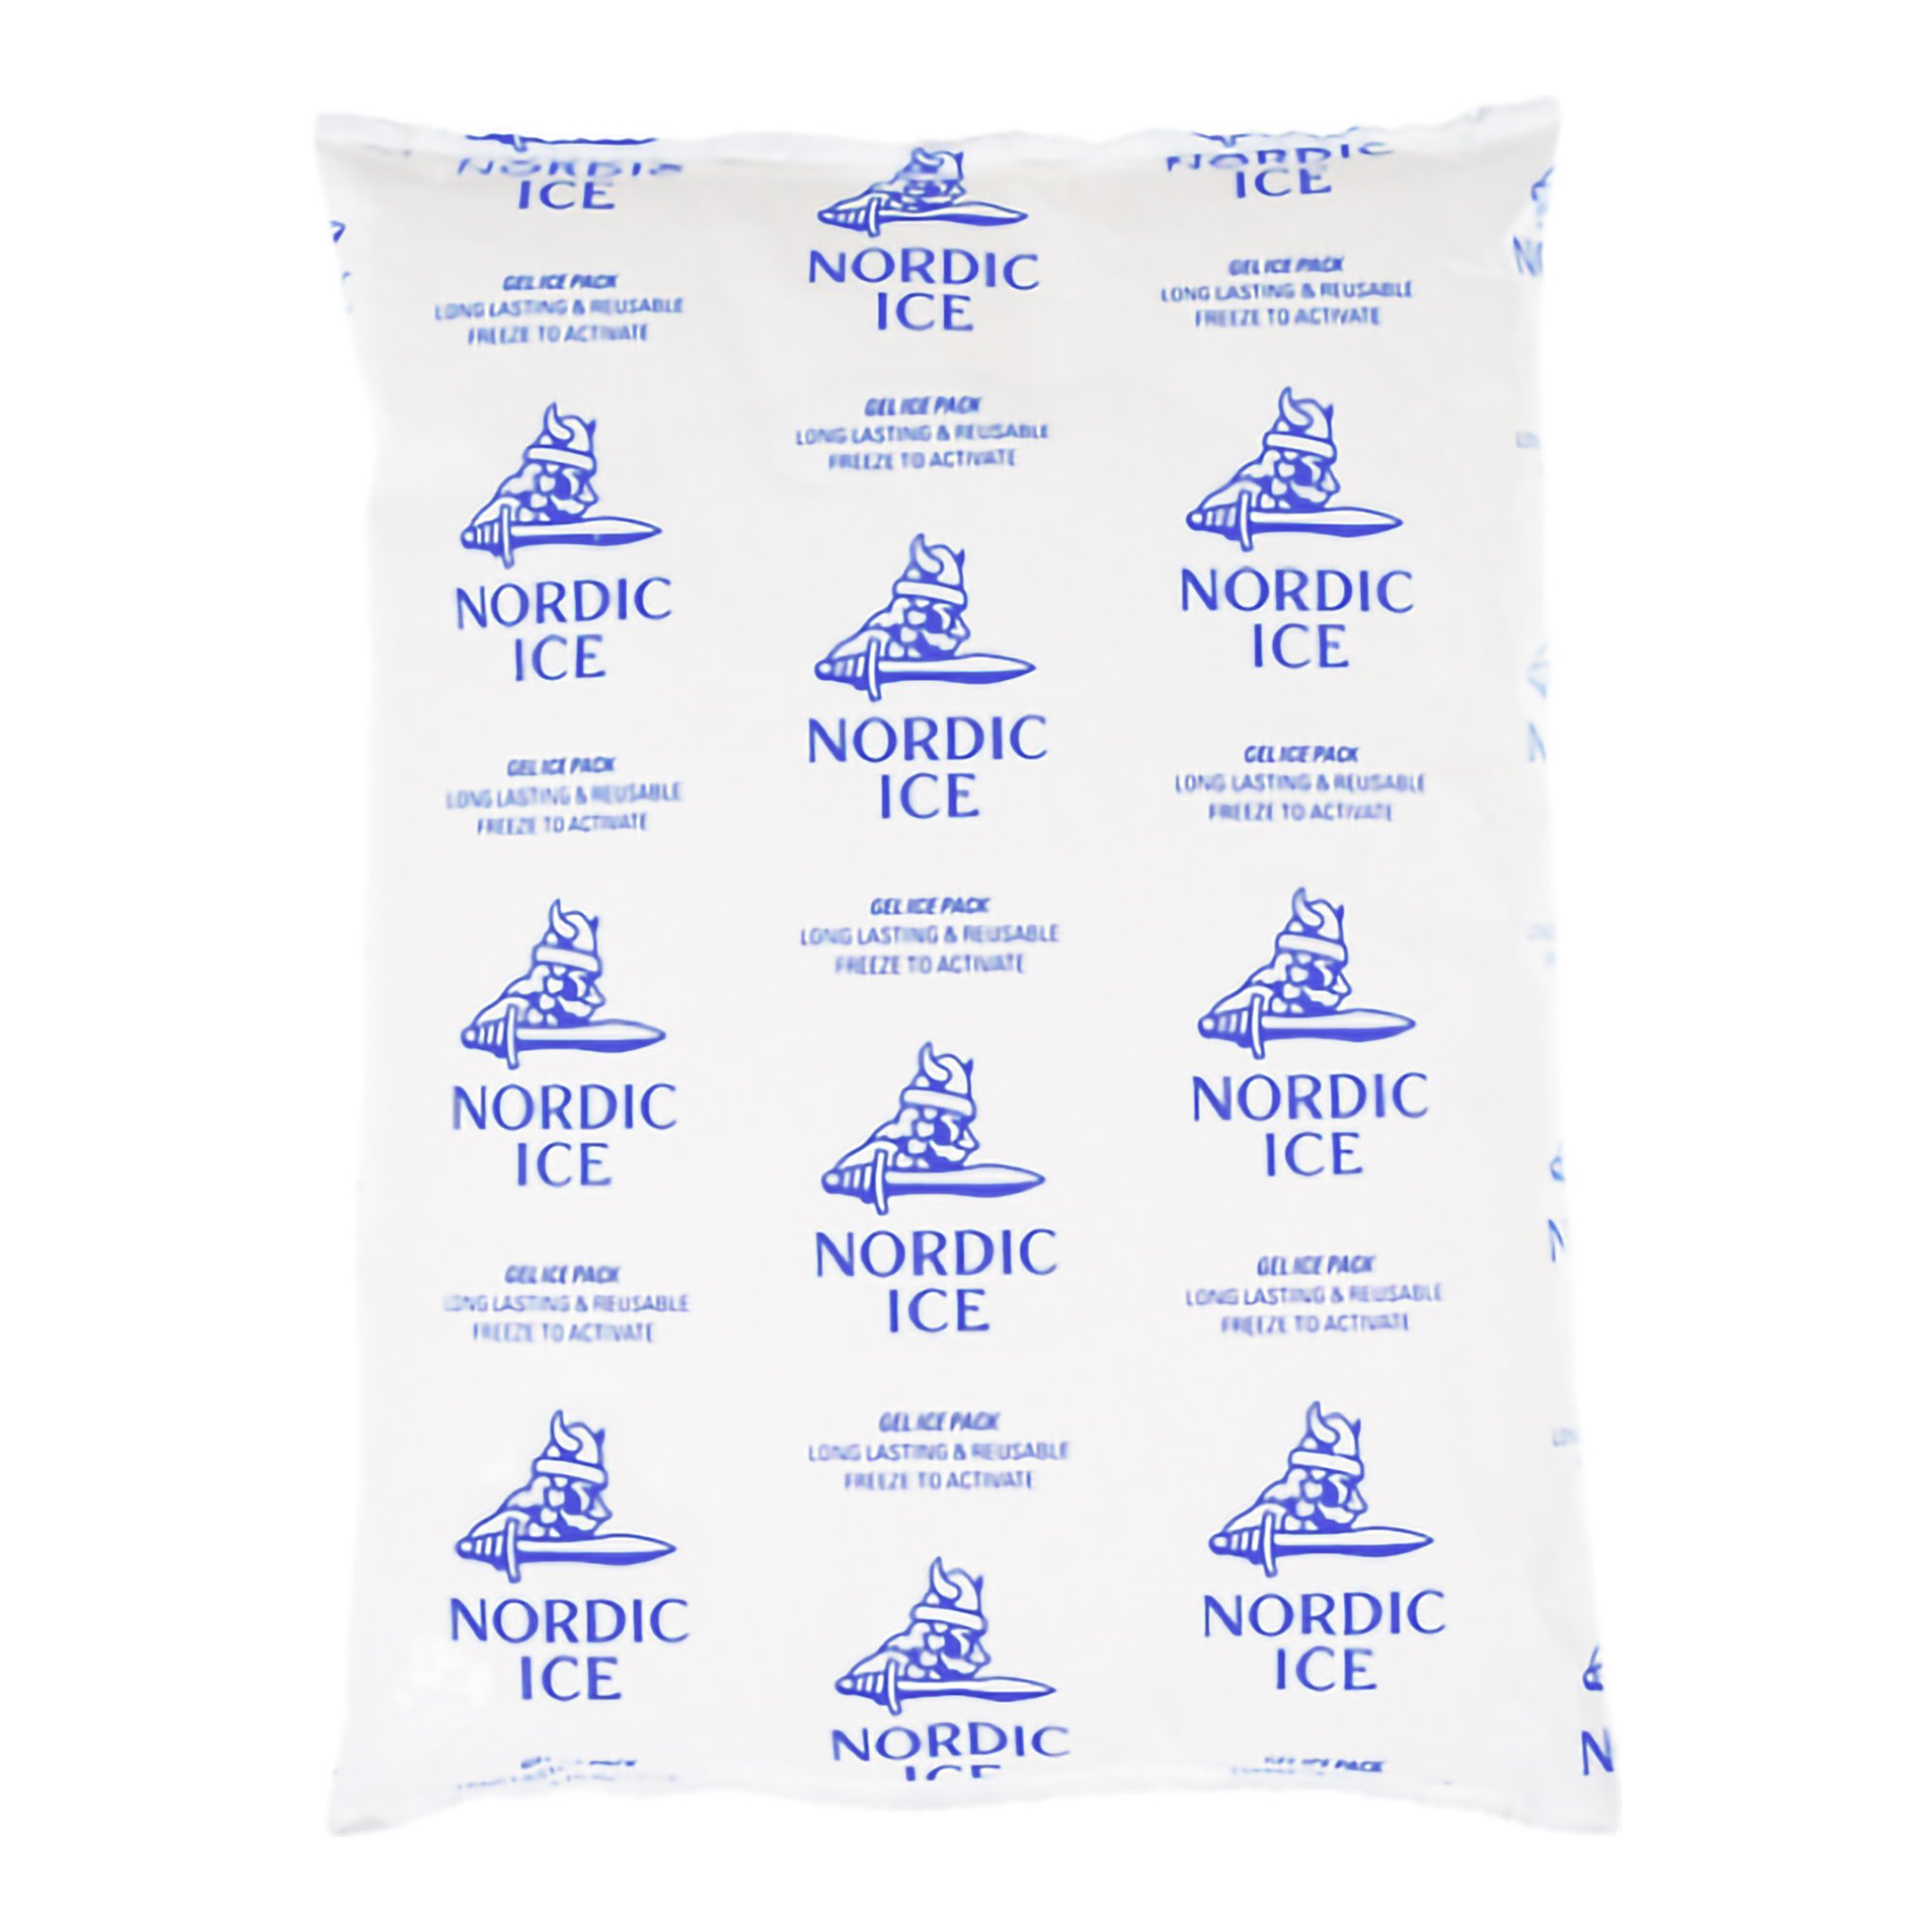 Ice Pack - ICE-1